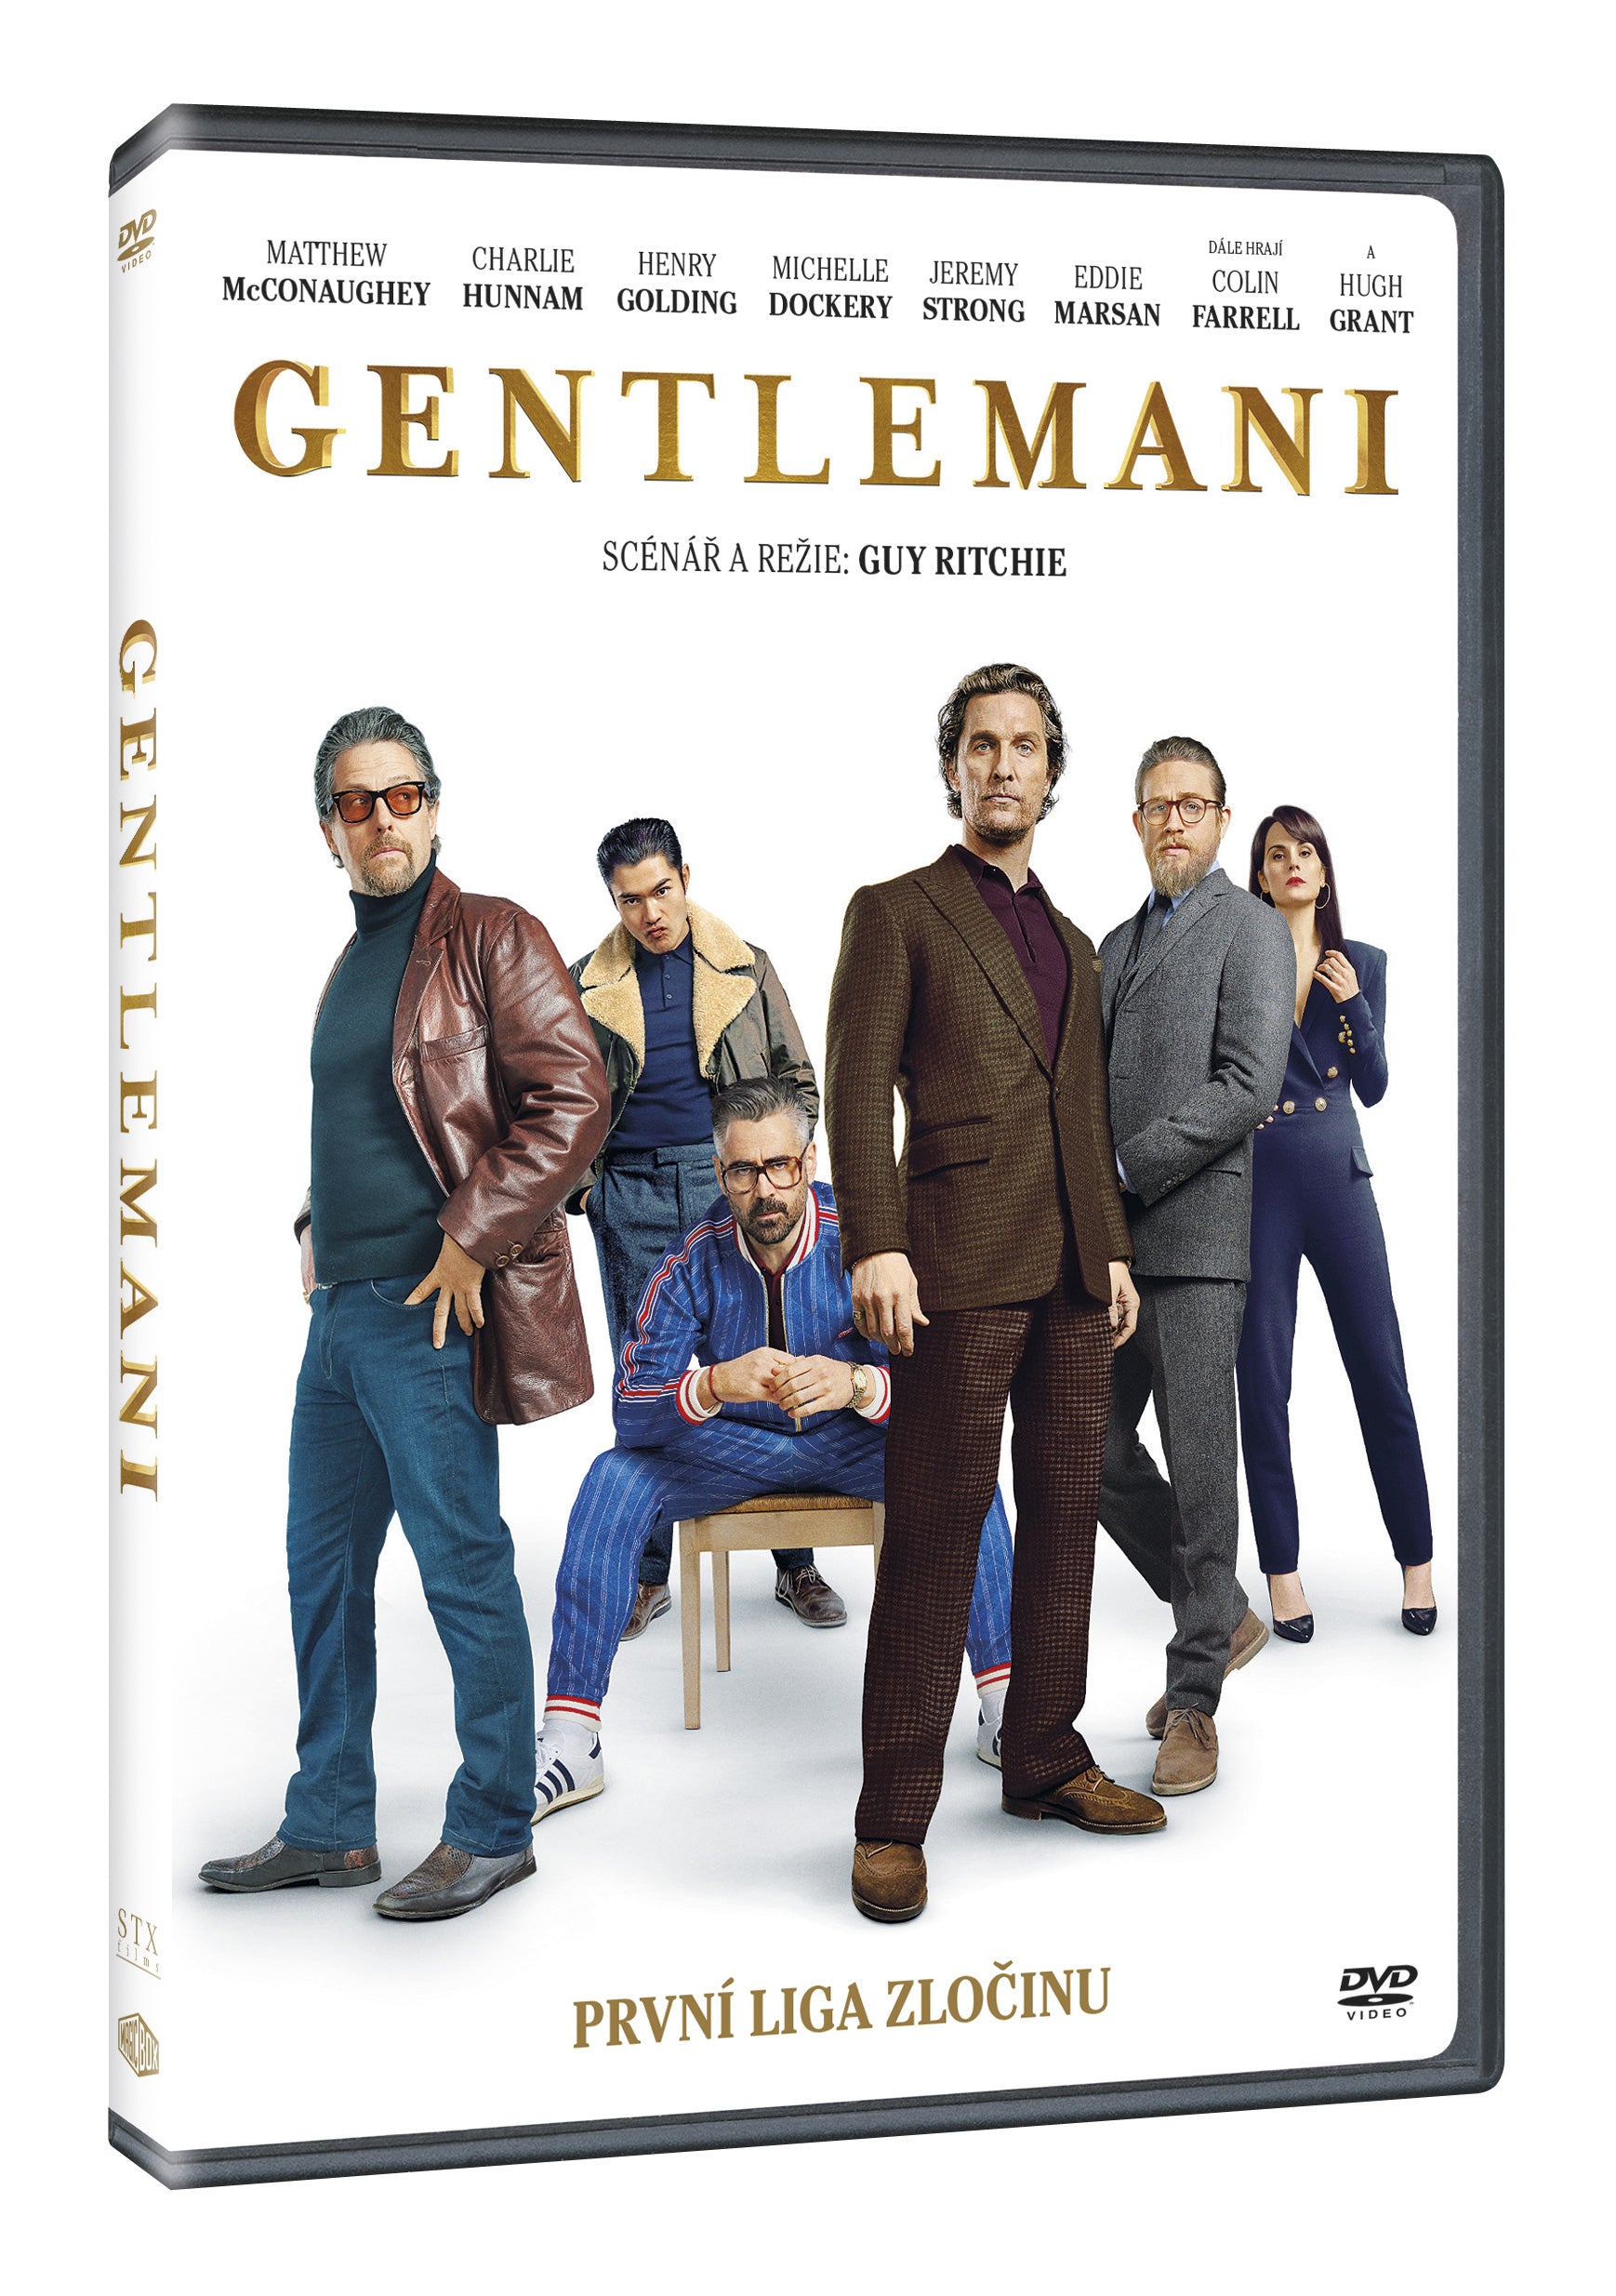 Gentlemani DVD / Gentlemen